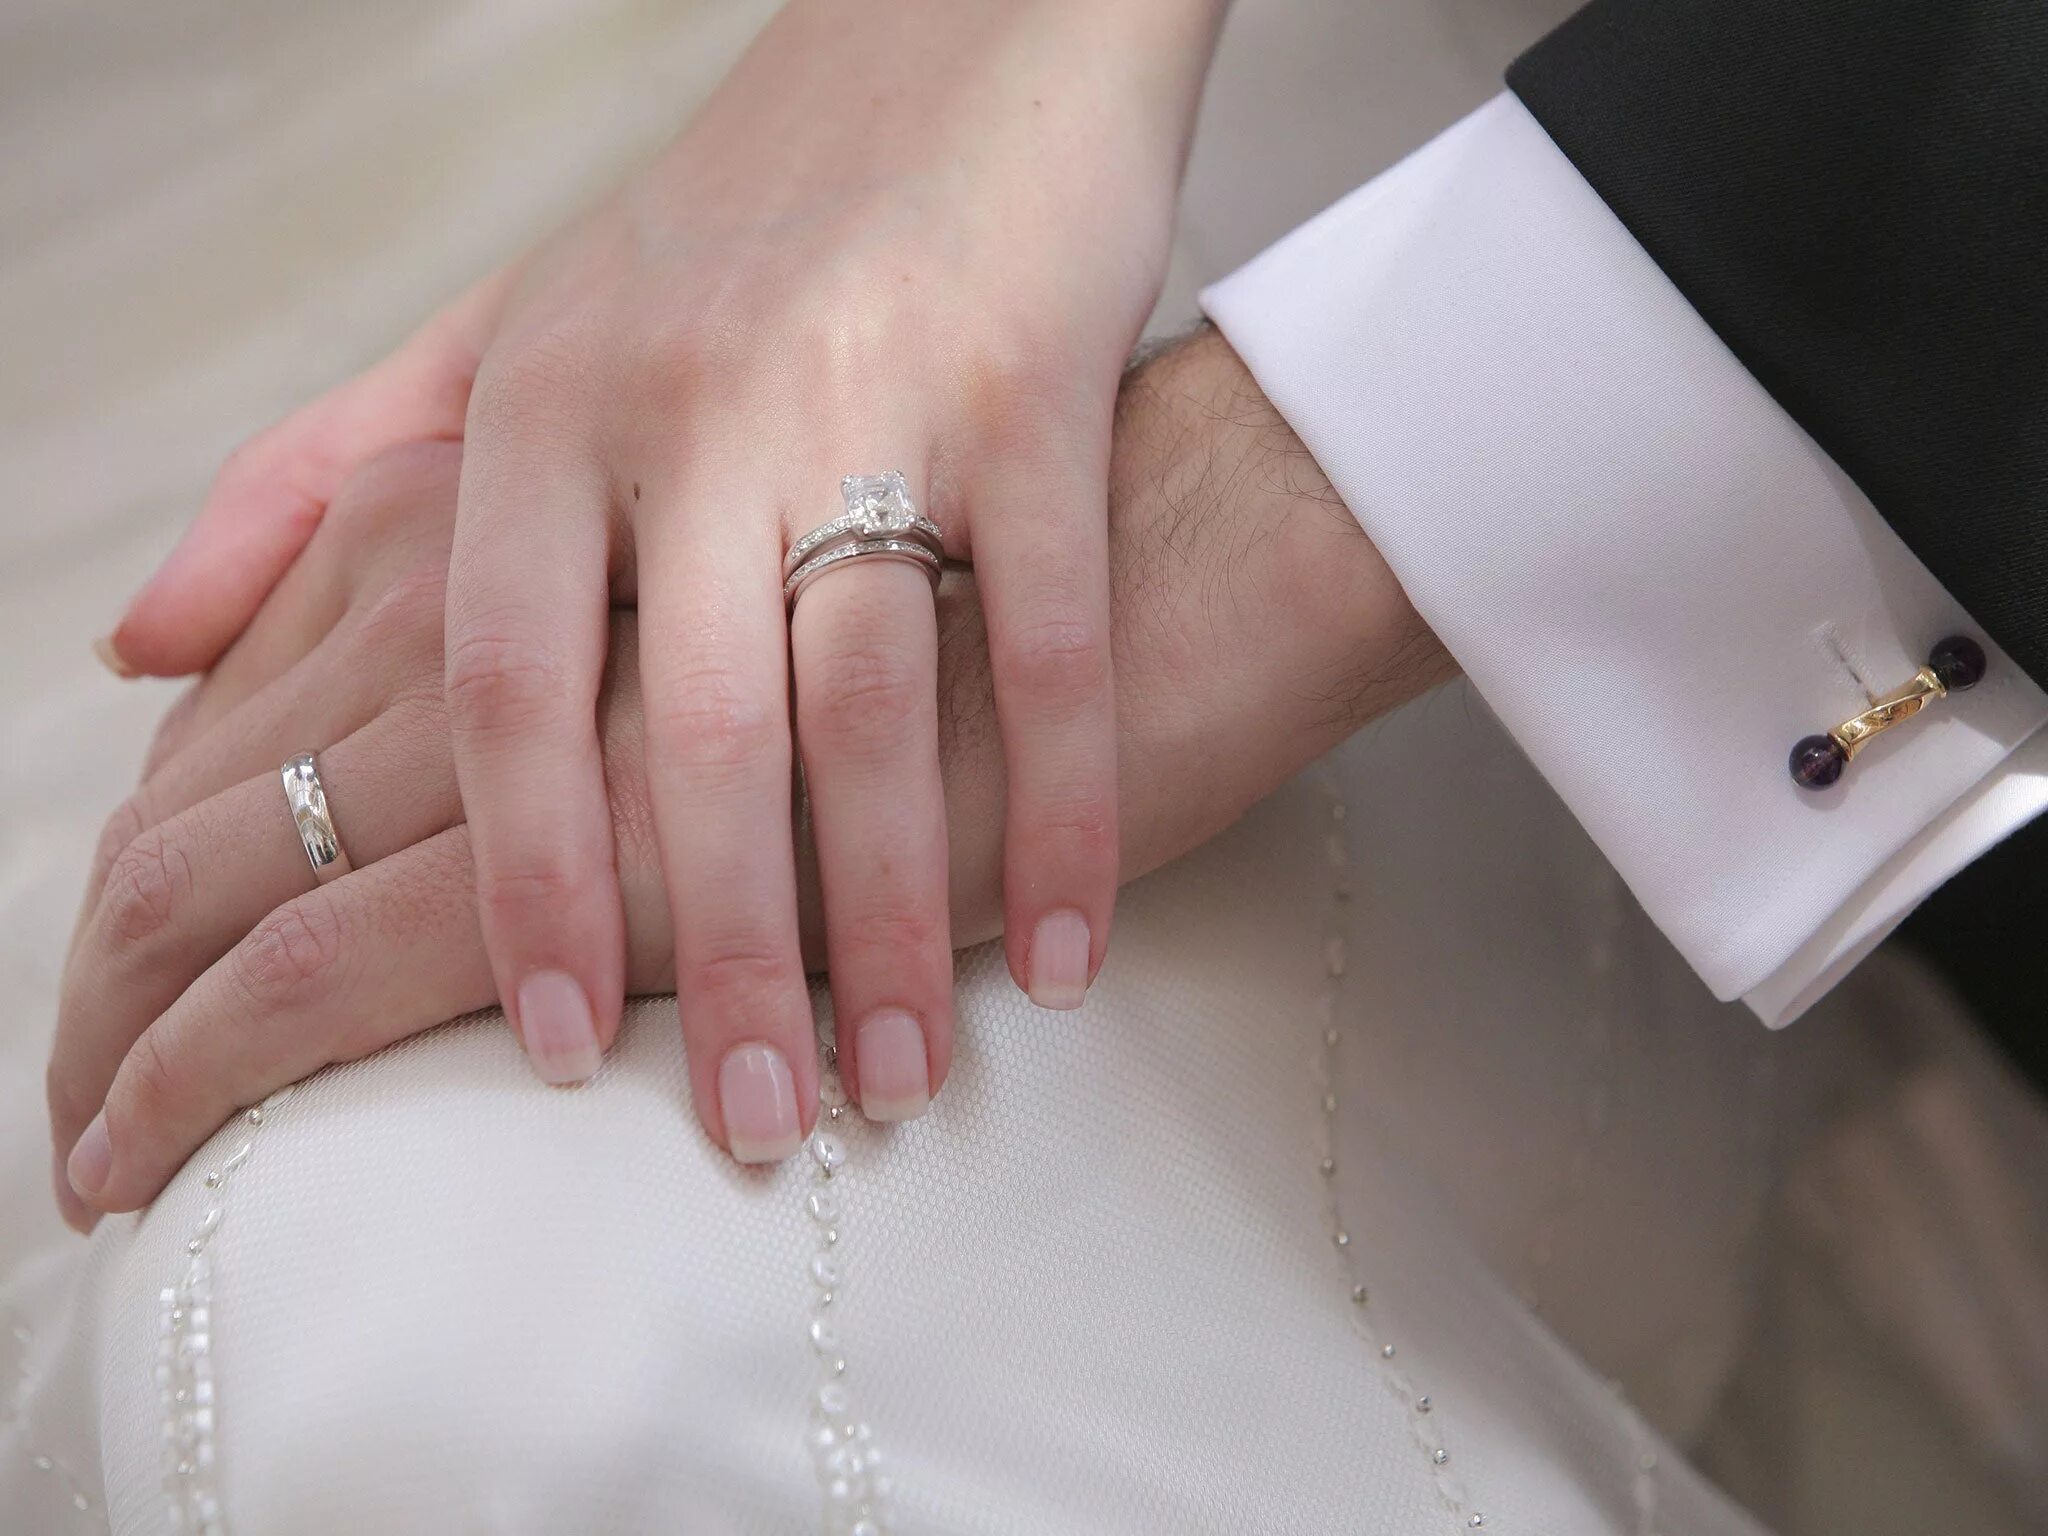 Обручальные кольца на руках. Обручальное кольцо на пальце. Обручальные и помолвочные кольца. Обручальное и венчальное кольцо на одном пальце.